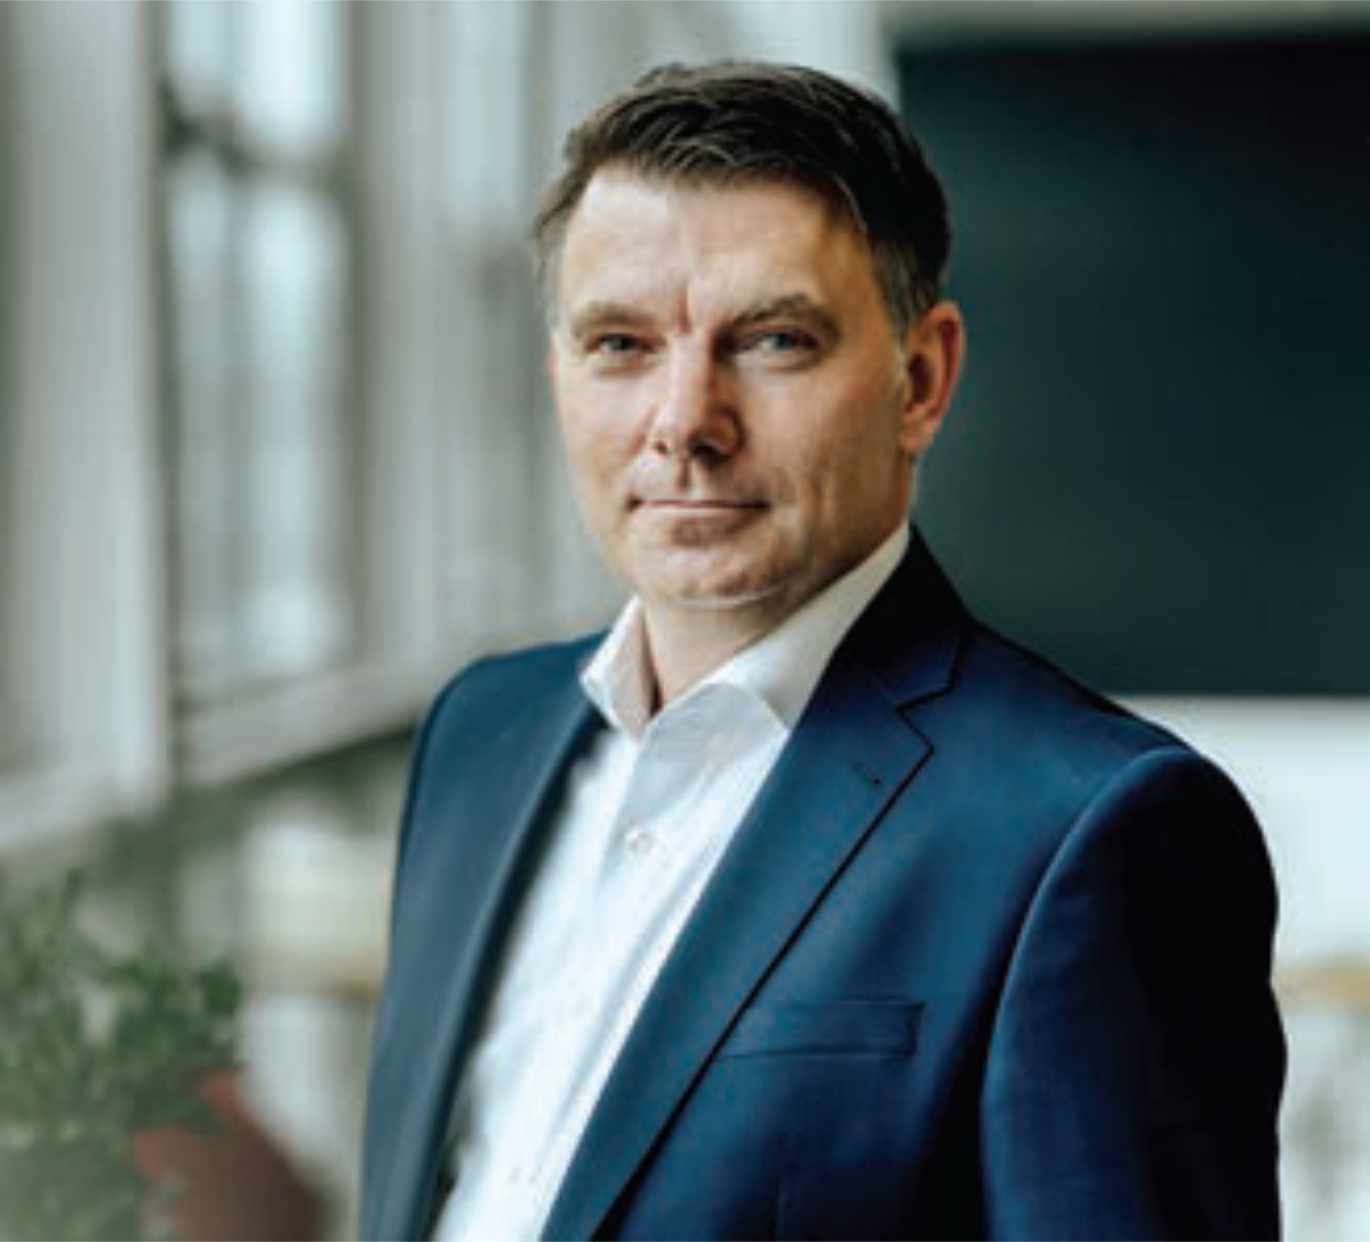 Mr. Jürgen Huber, CEO of BISS.ID GmbH